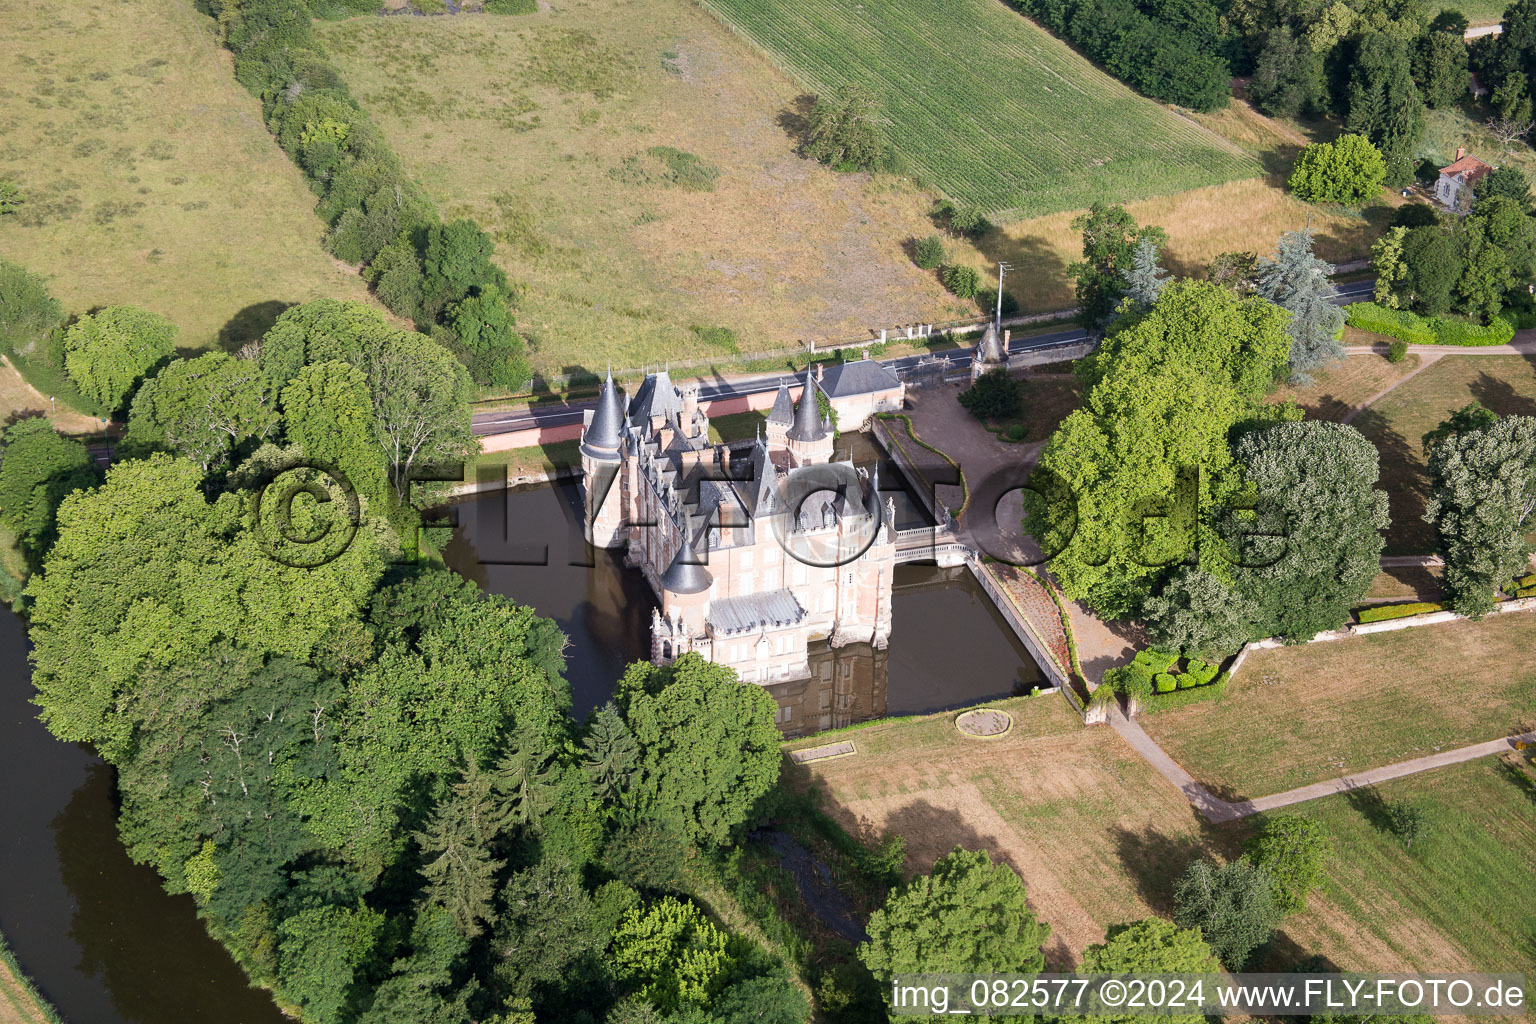 Château de Combreux à Combreux dans le département Loiret, France d'en haut